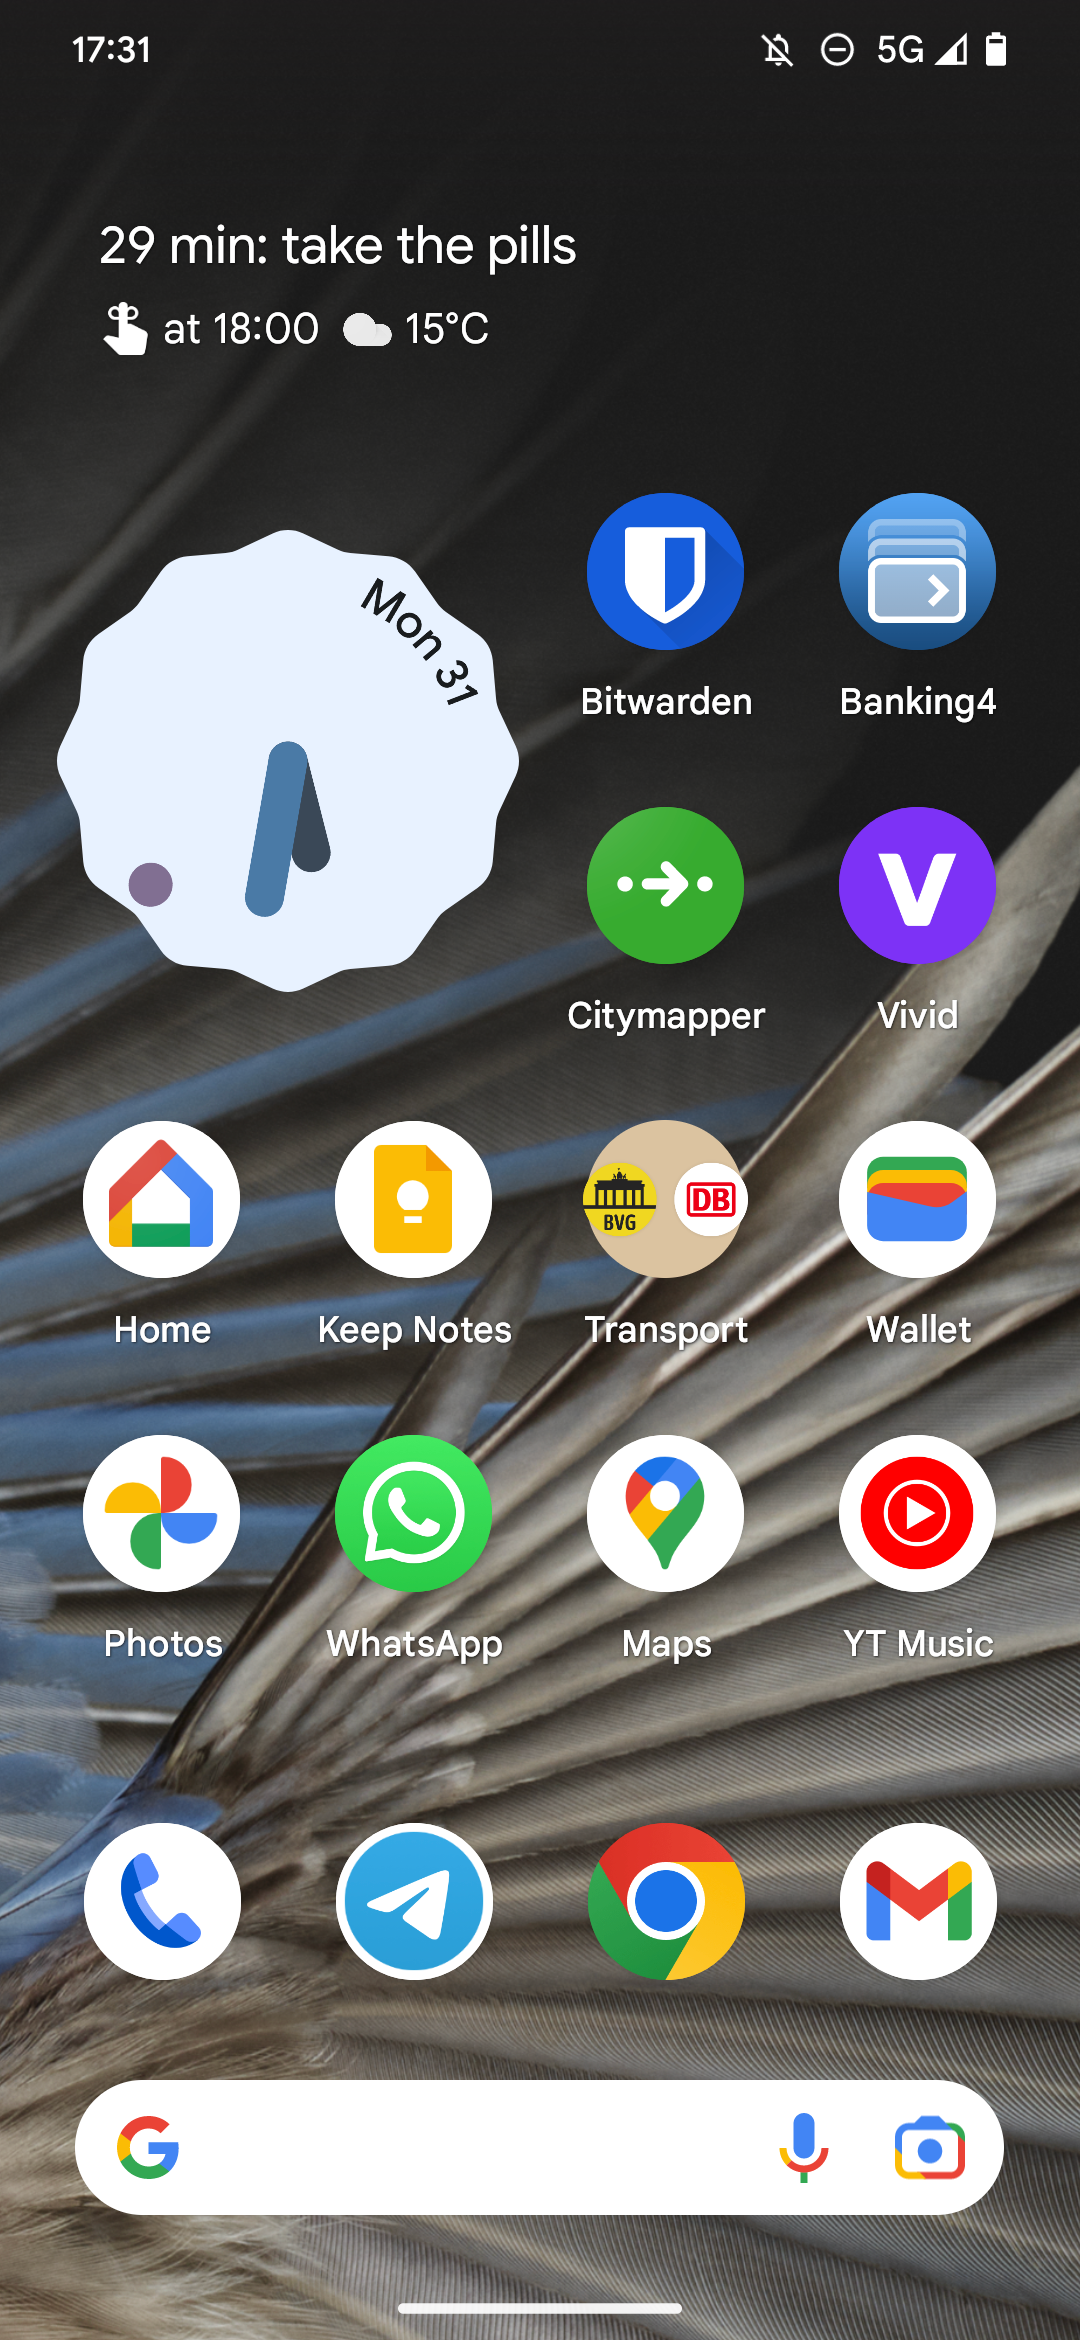 Captura de tela da tela inicial do Pixel Launcher com ícones regulares